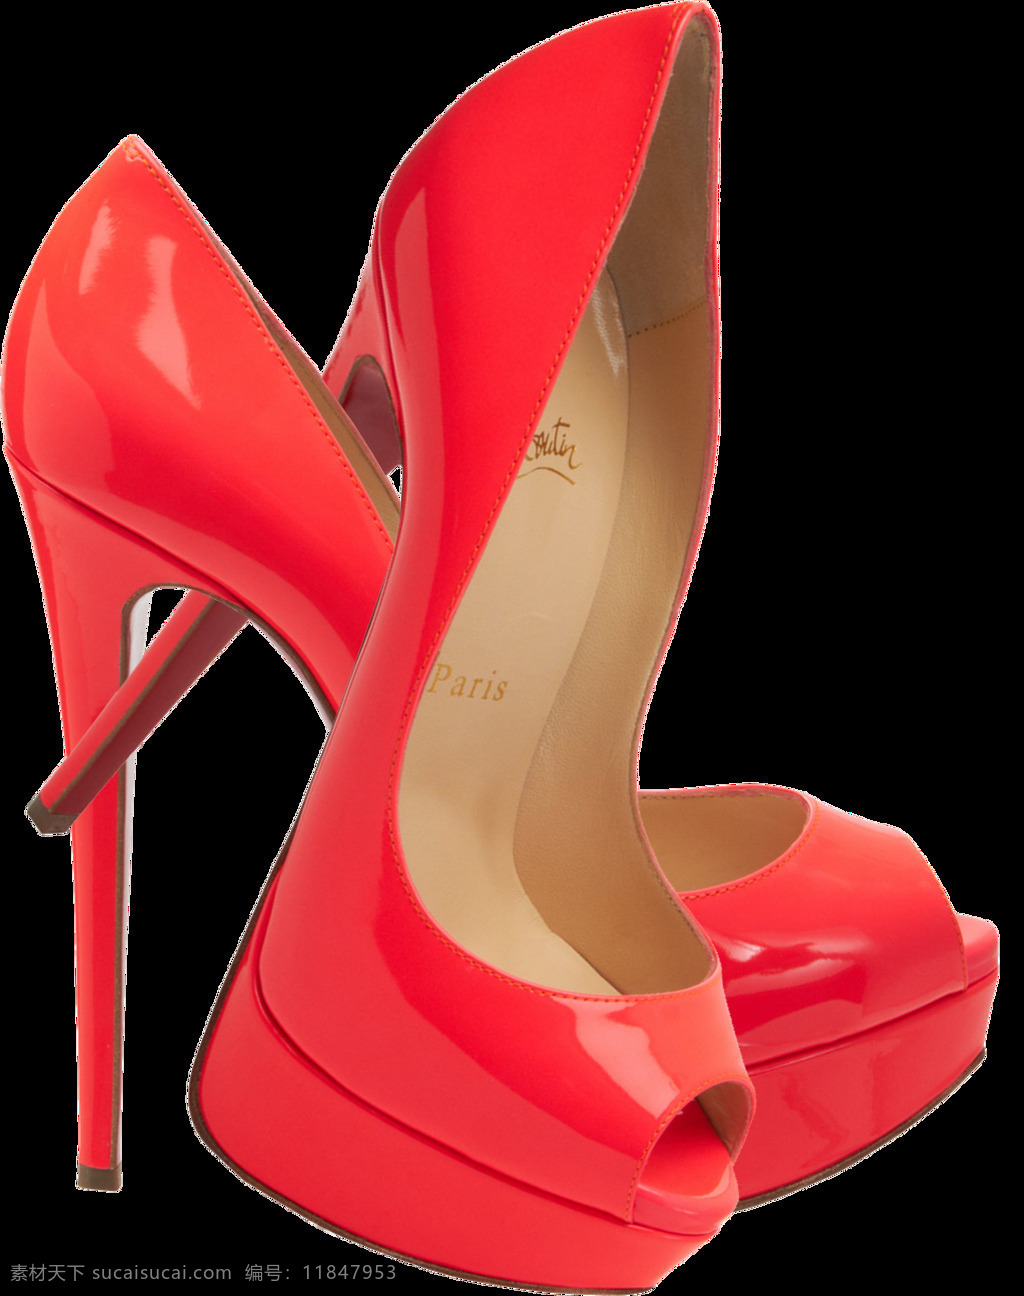 红色 漂亮 高跟鞋 免 抠 透明 图 层 丝袜高跟鞋 世界 上 最 性感高跟鞋 高跟鞋海报 情趣高跟鞋 高跟鞋图片 水晶 大全 黑色高跟鞋